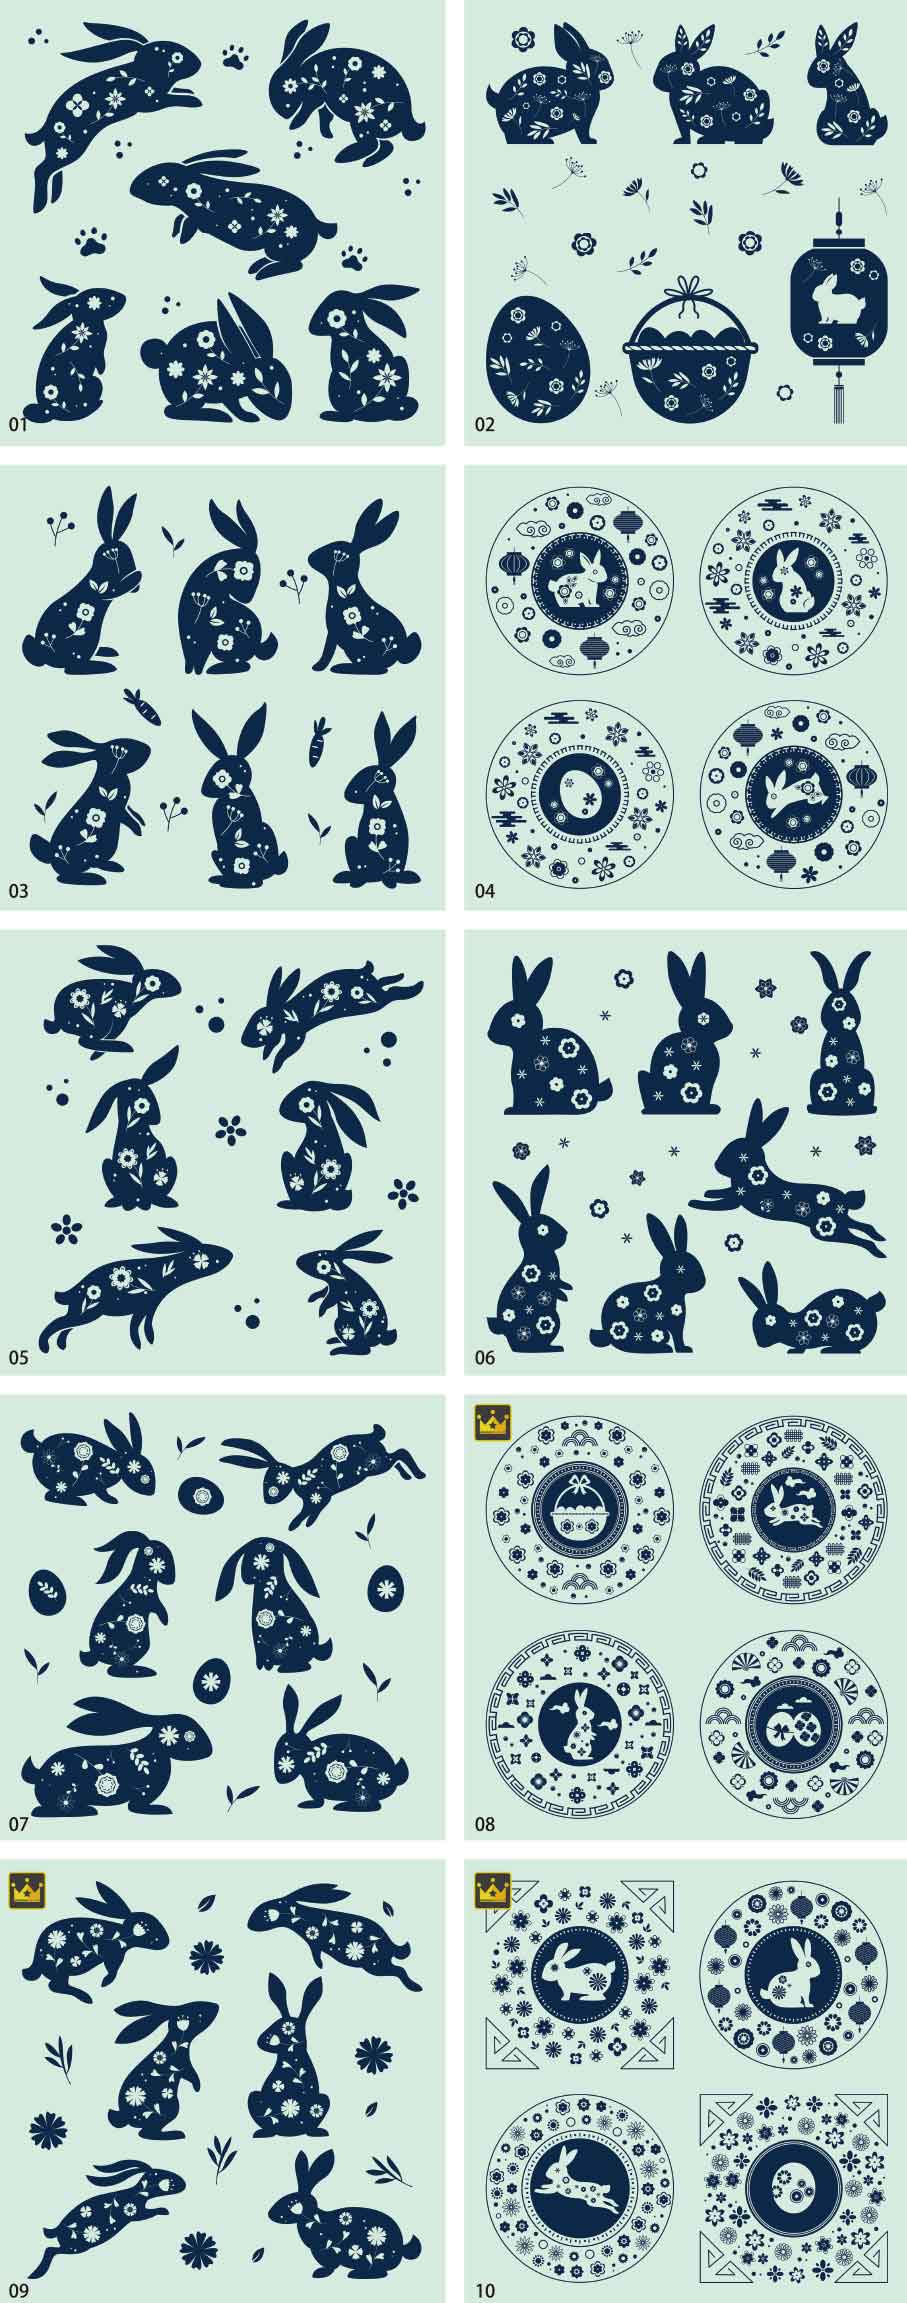 Bộ sưu tập minh họa thỏ sáng tạo